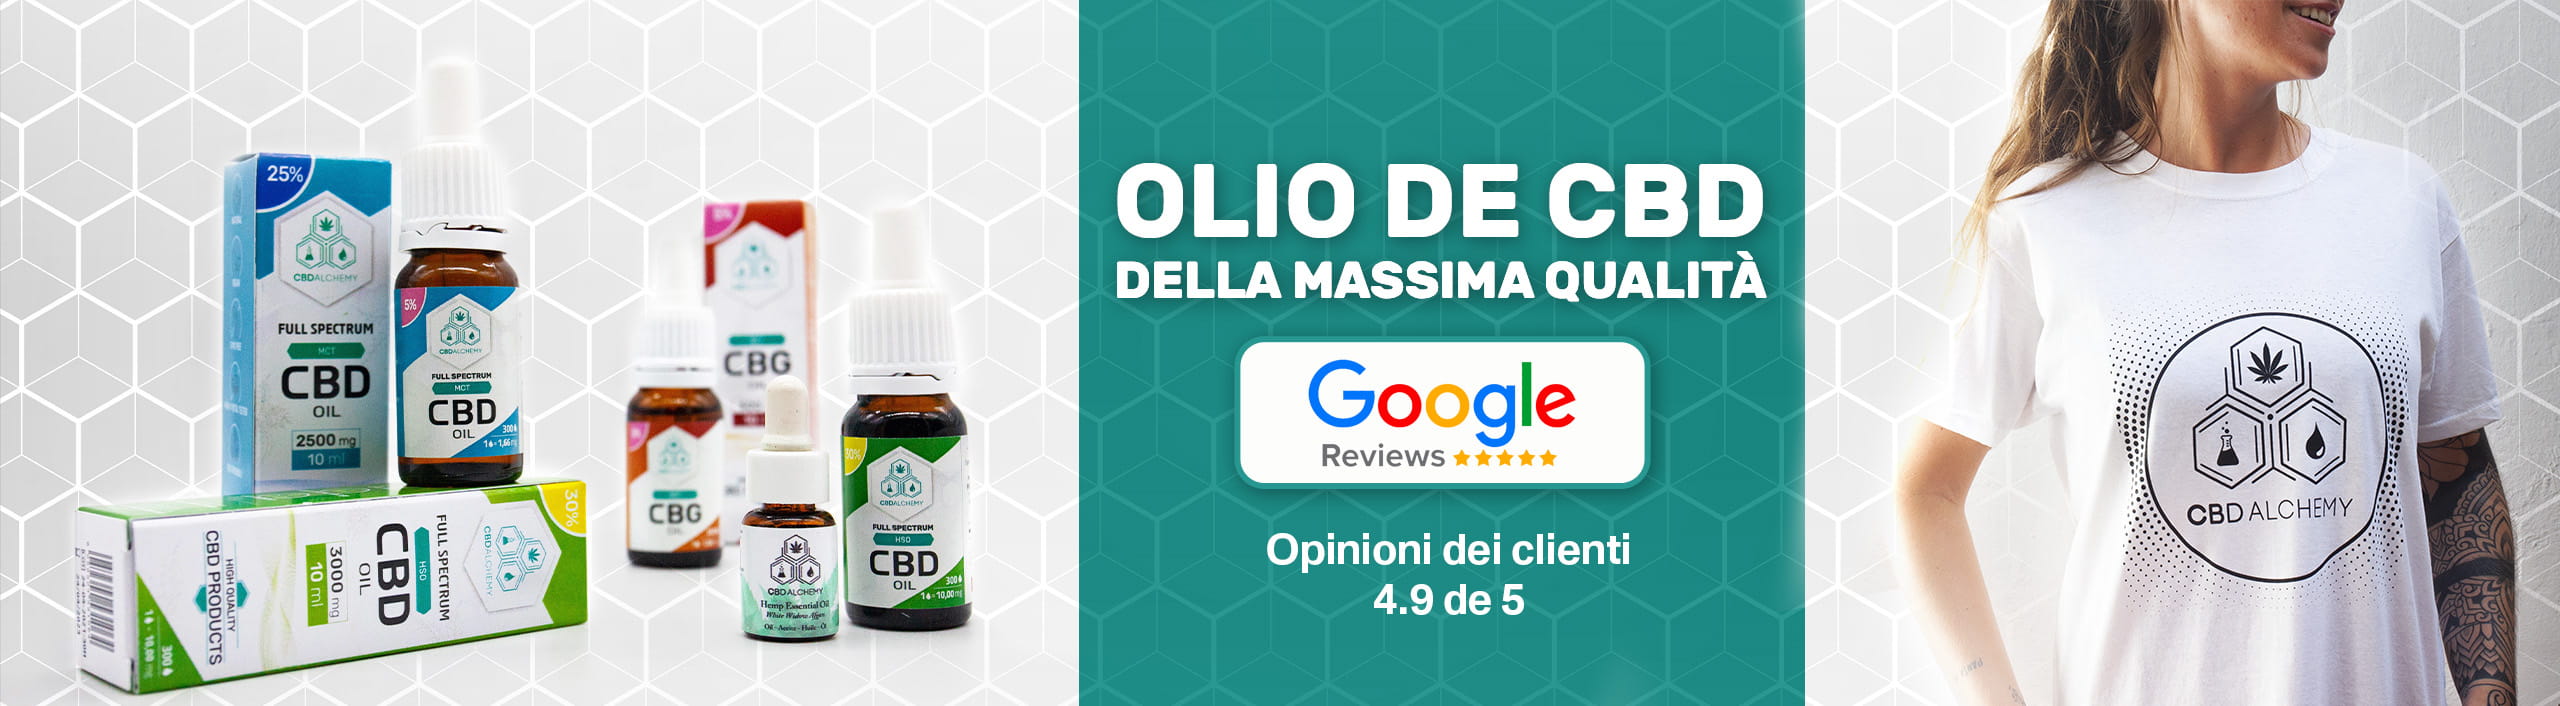 CBD Alchemy è apprezzata su Google My Business per i suoi oli di CBD di alta qualità.